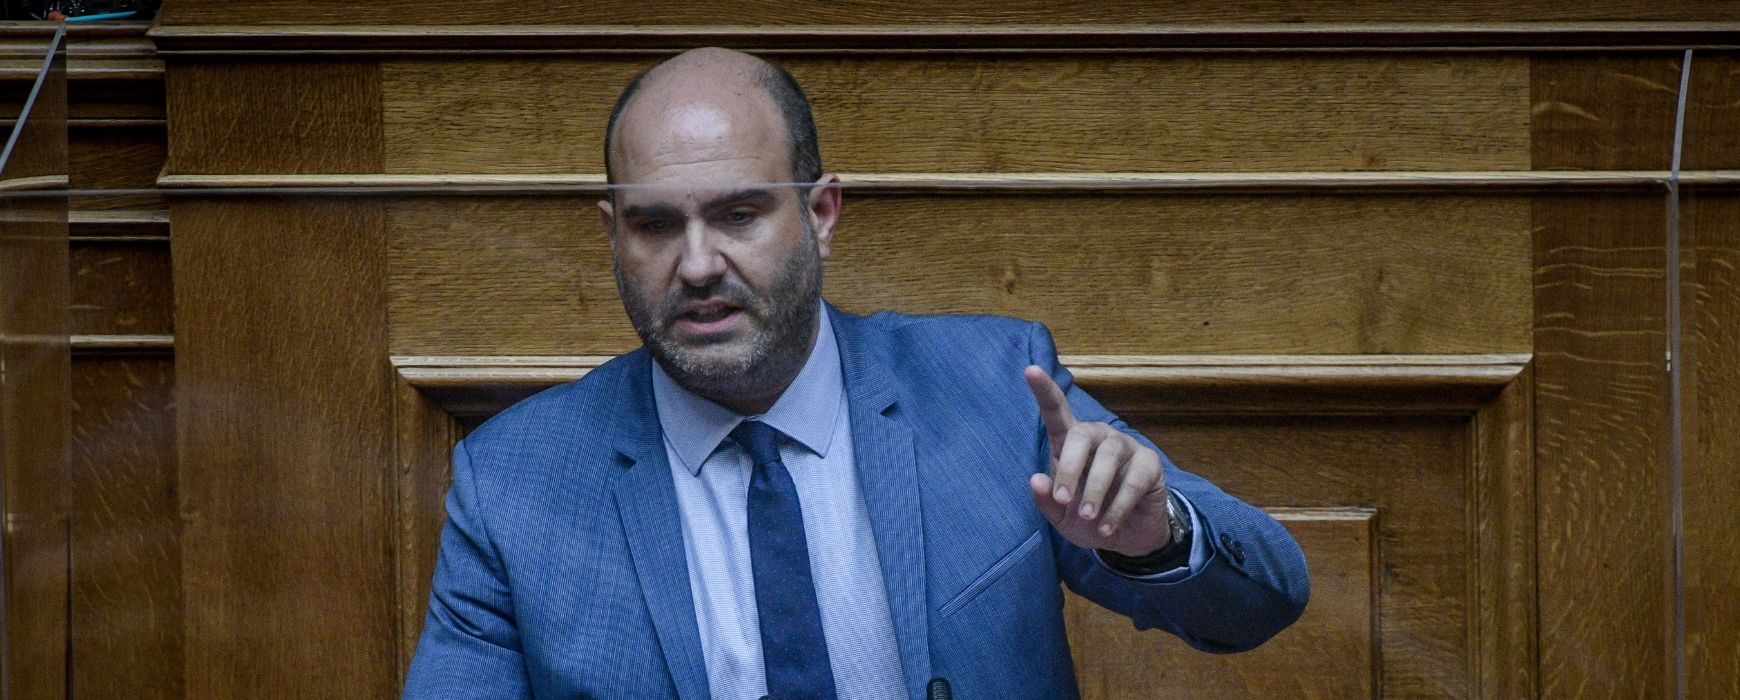 Δ.Μαρκόπουλος: «Ο κύριος Τσίπρας είναι Πολάκης χωρίς μουστάκι»